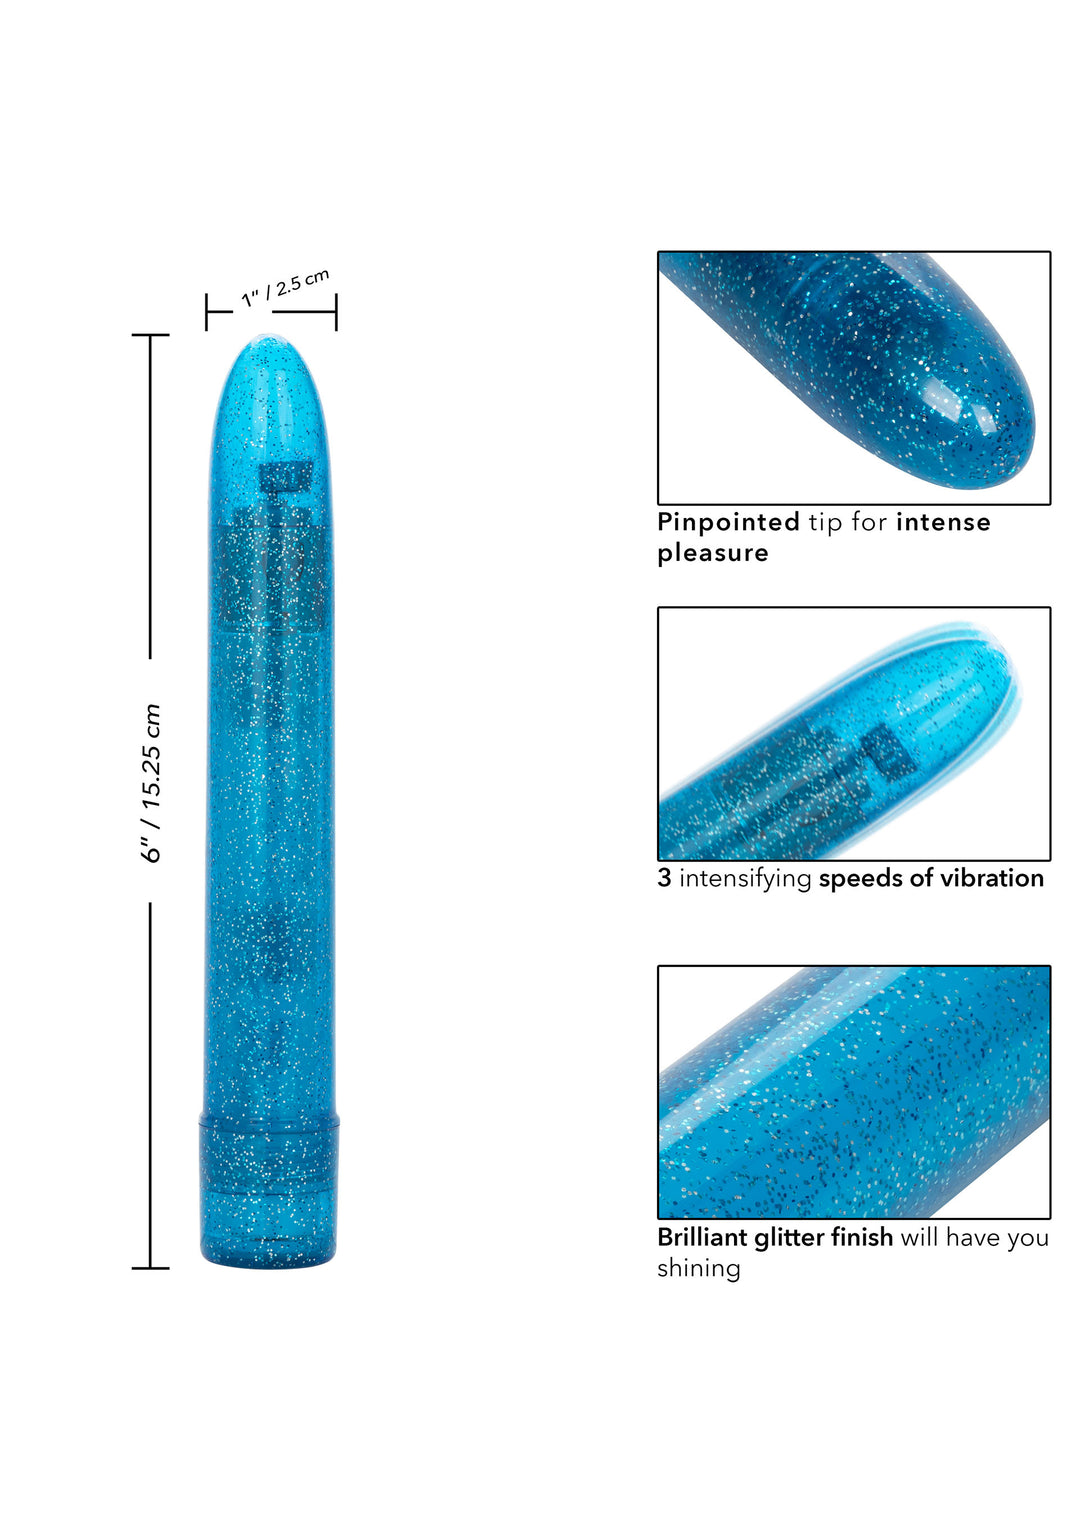 Classic blue Sparkle Slim Vibe vibrator